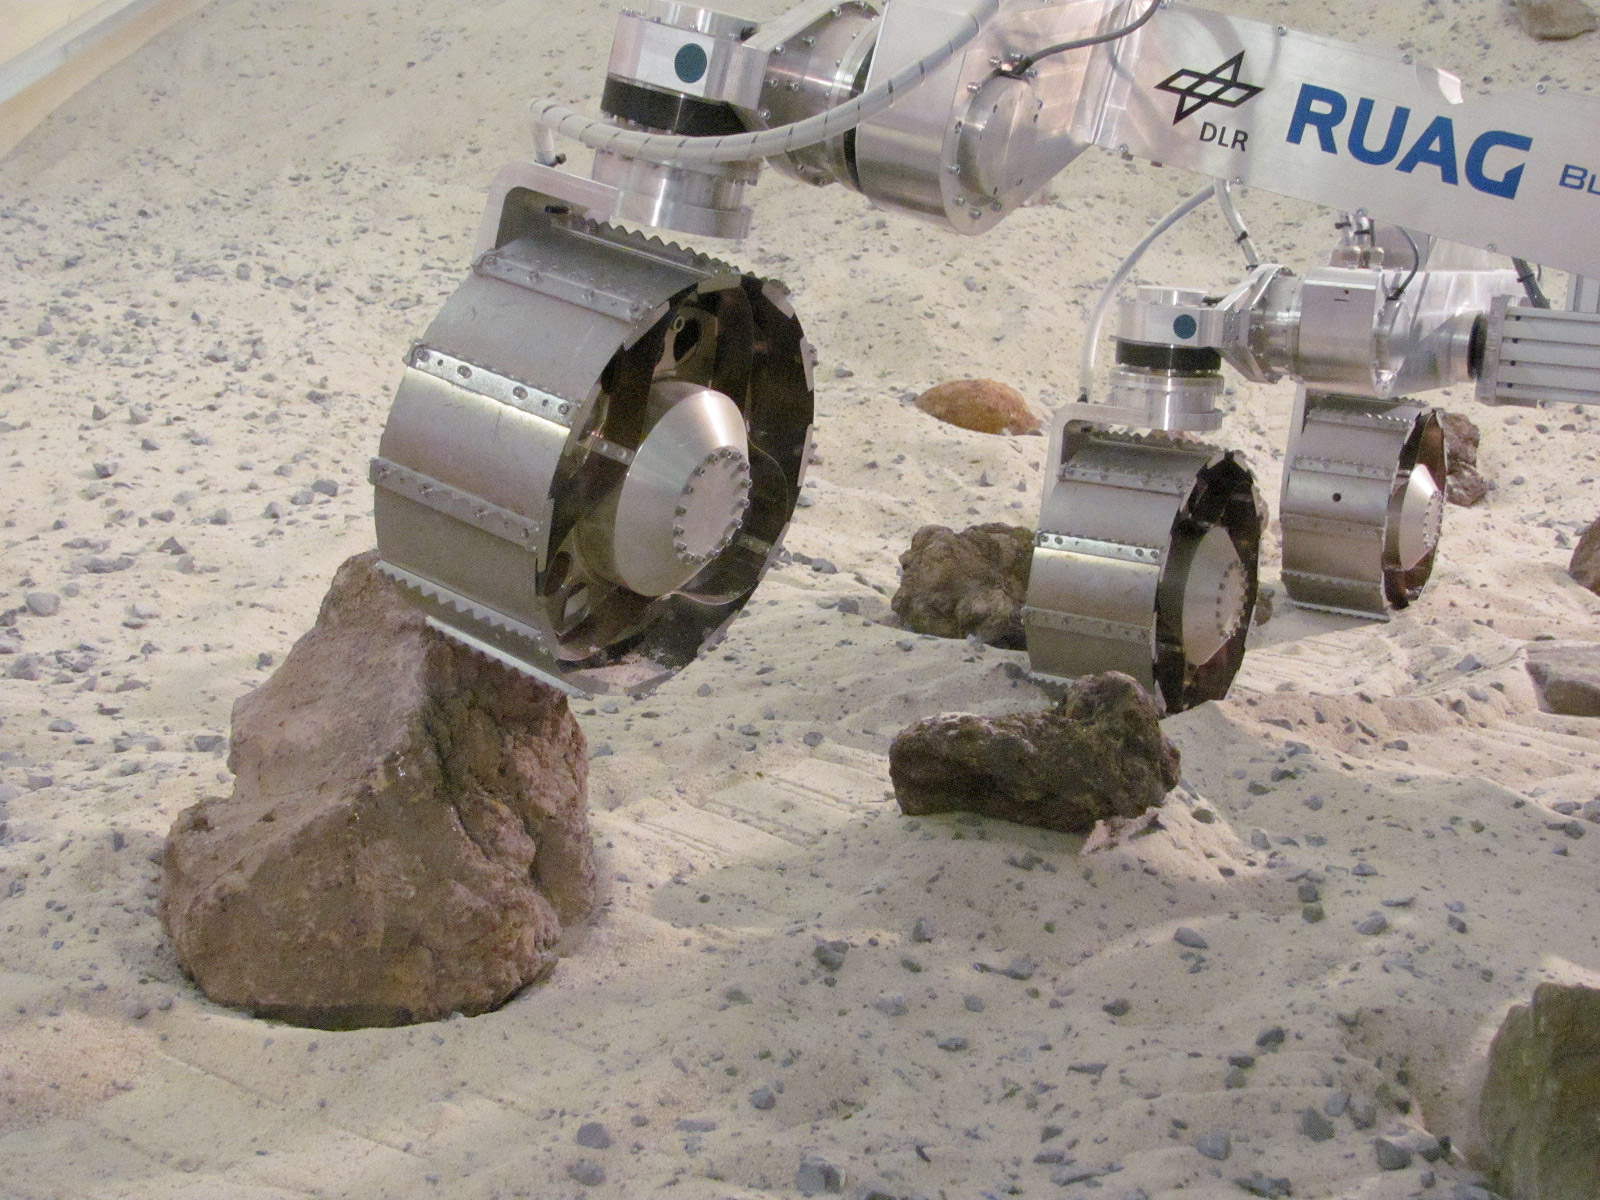 Le rover utilisé n’est pas un modèle de vol, ni une copie exacte de celui qui sera envoyé sur Mars. Cependant, les roues et le système d'entraînement le sont, comme le centre de gravité. En revanche, il est 100 kilogrammes moins lourd, de façon à simuler la gravité martienne. © DLR